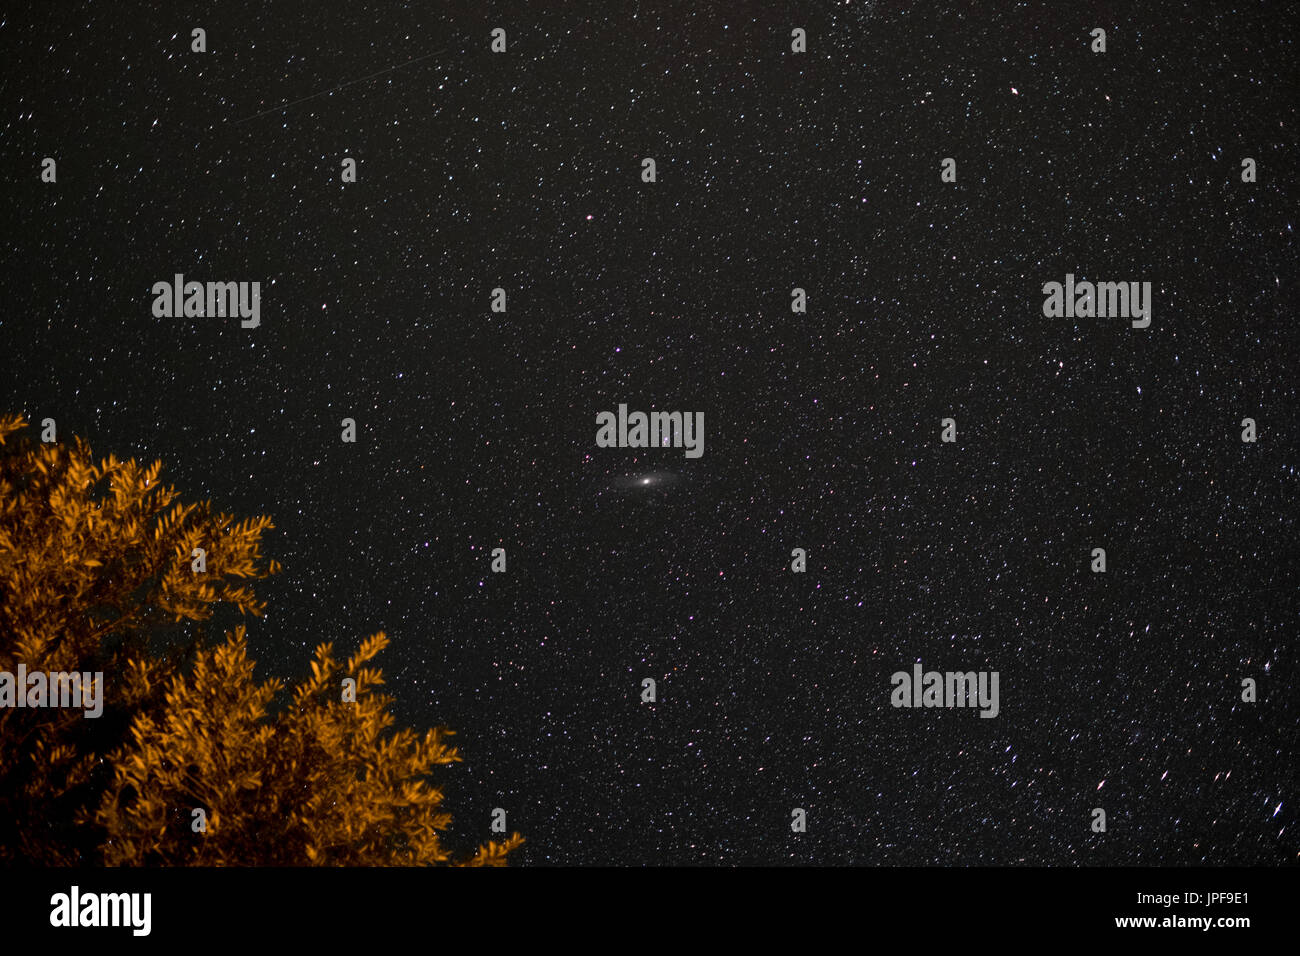 Himmel in der Nacht - Landschaft in der Nacht mit klarem Himmel und vielen stars Stockfoto